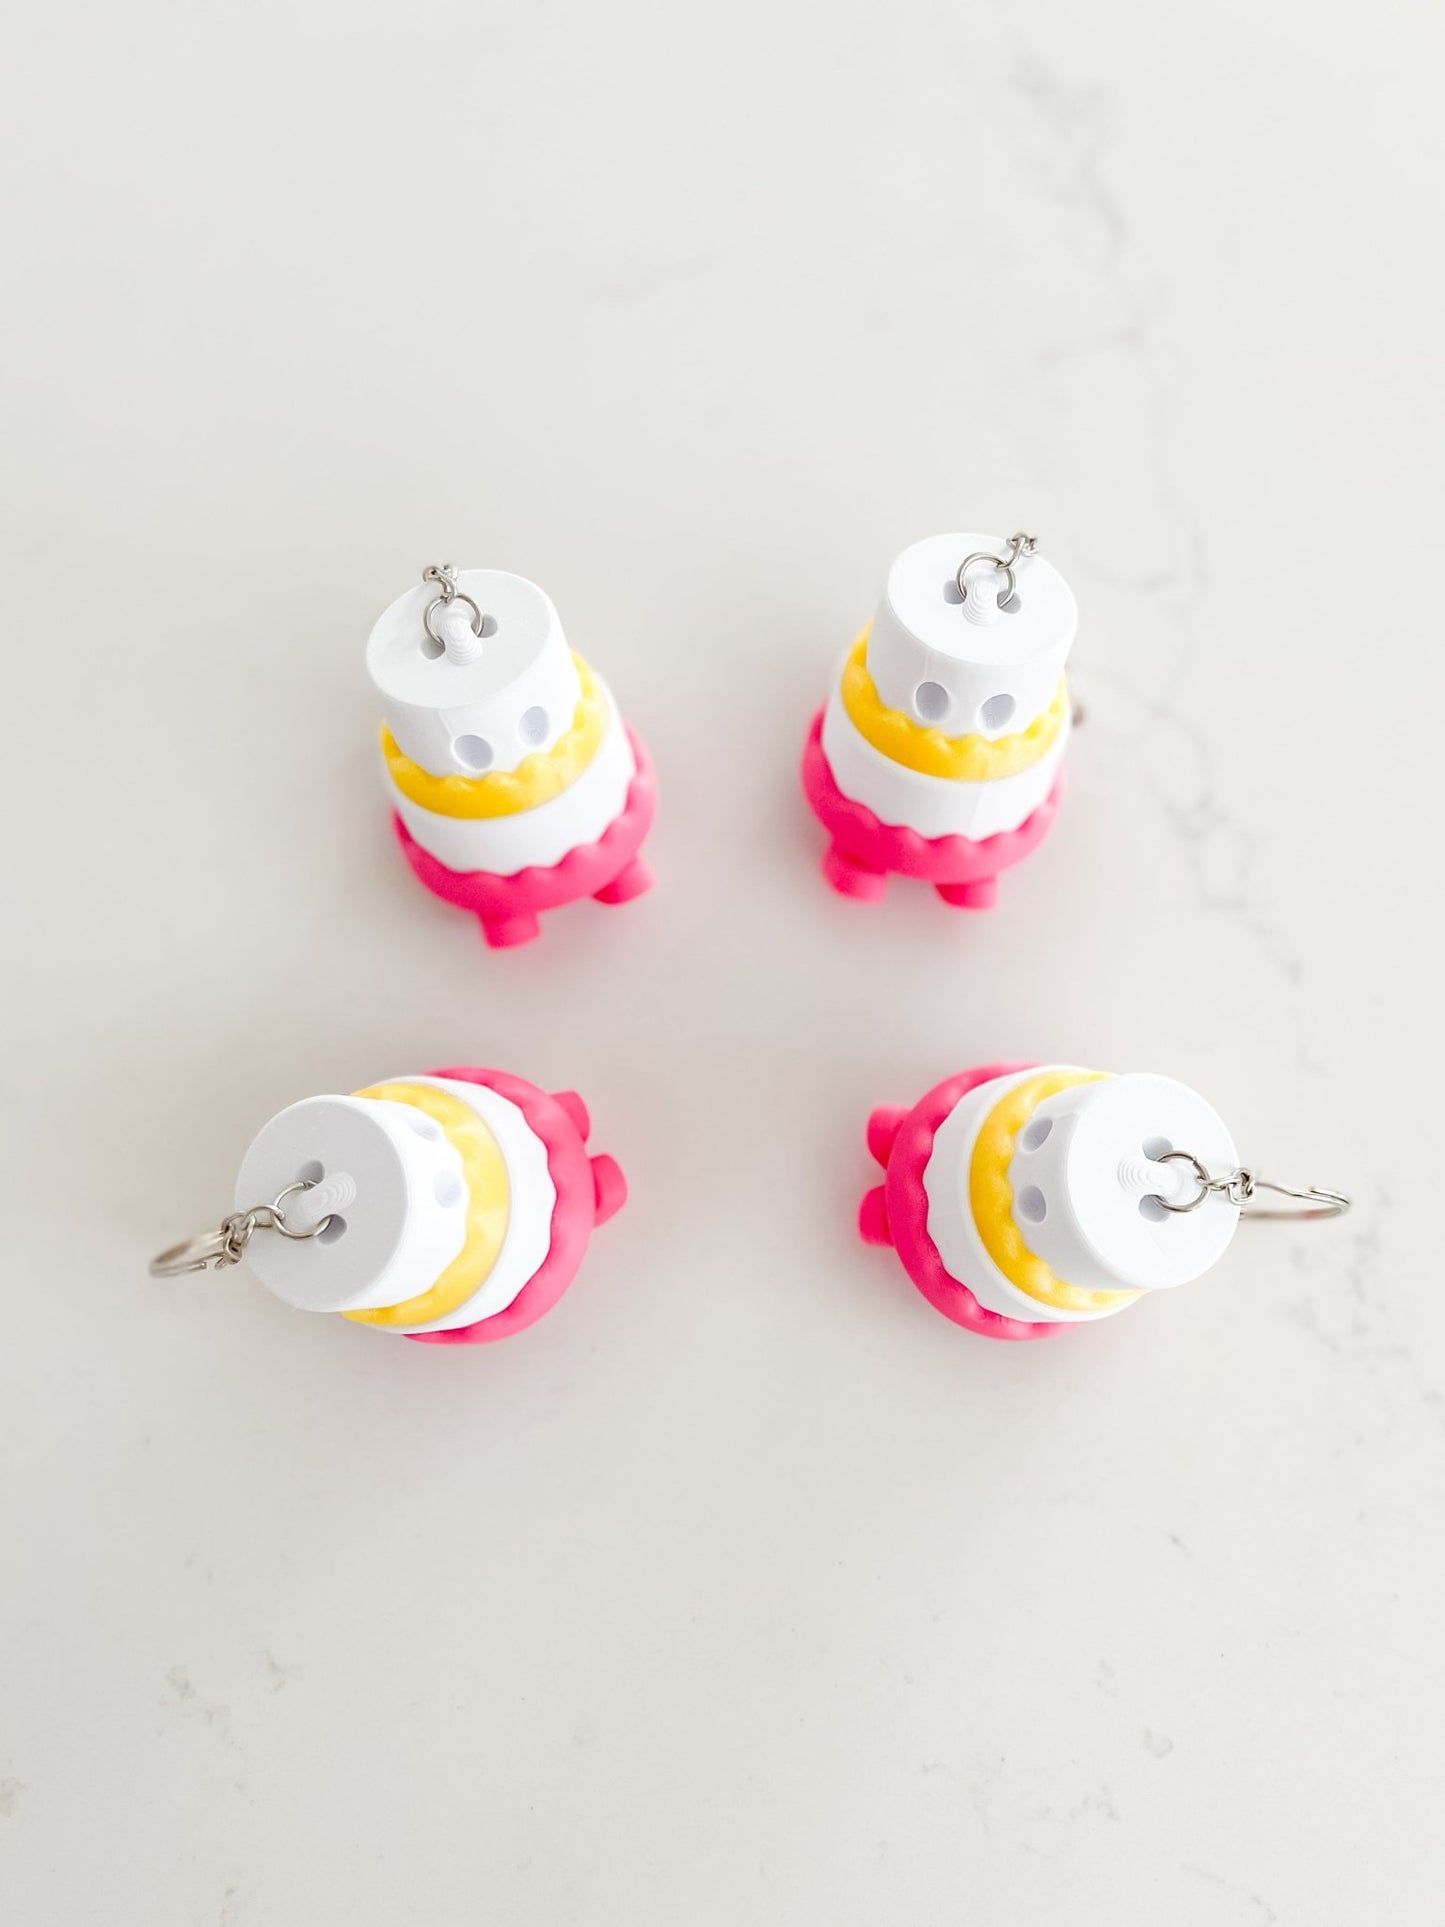 Baby Cakes Keychain - Designs by Lauren Ann